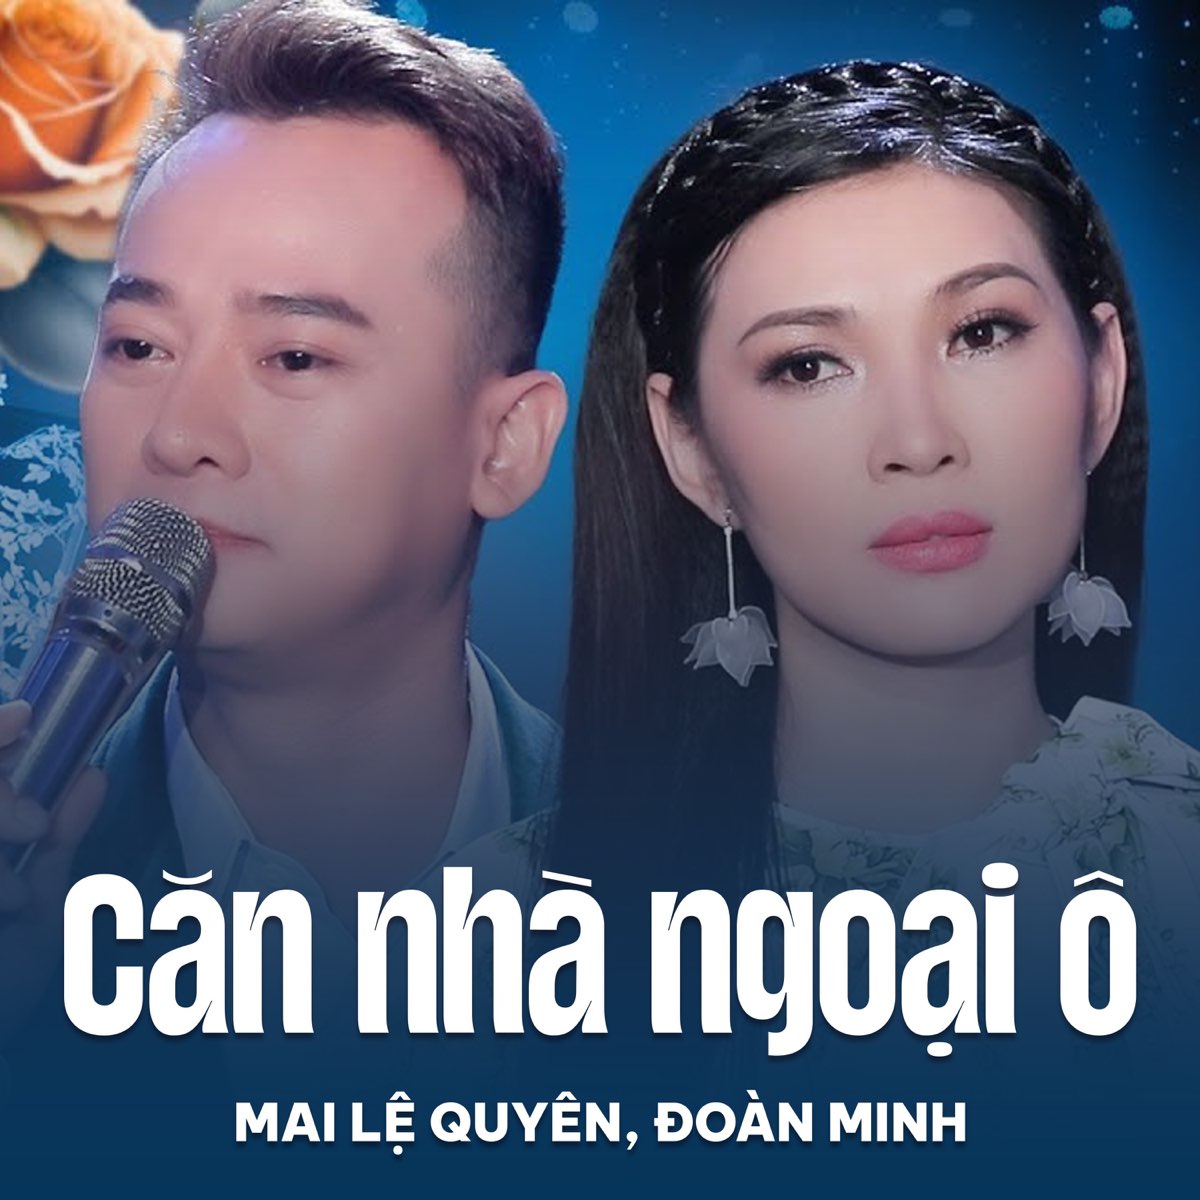 ‎Căn Nhà Ngoại Ô - Single by Mai Lệ Quyên & Đoàn Minh on Apple Music